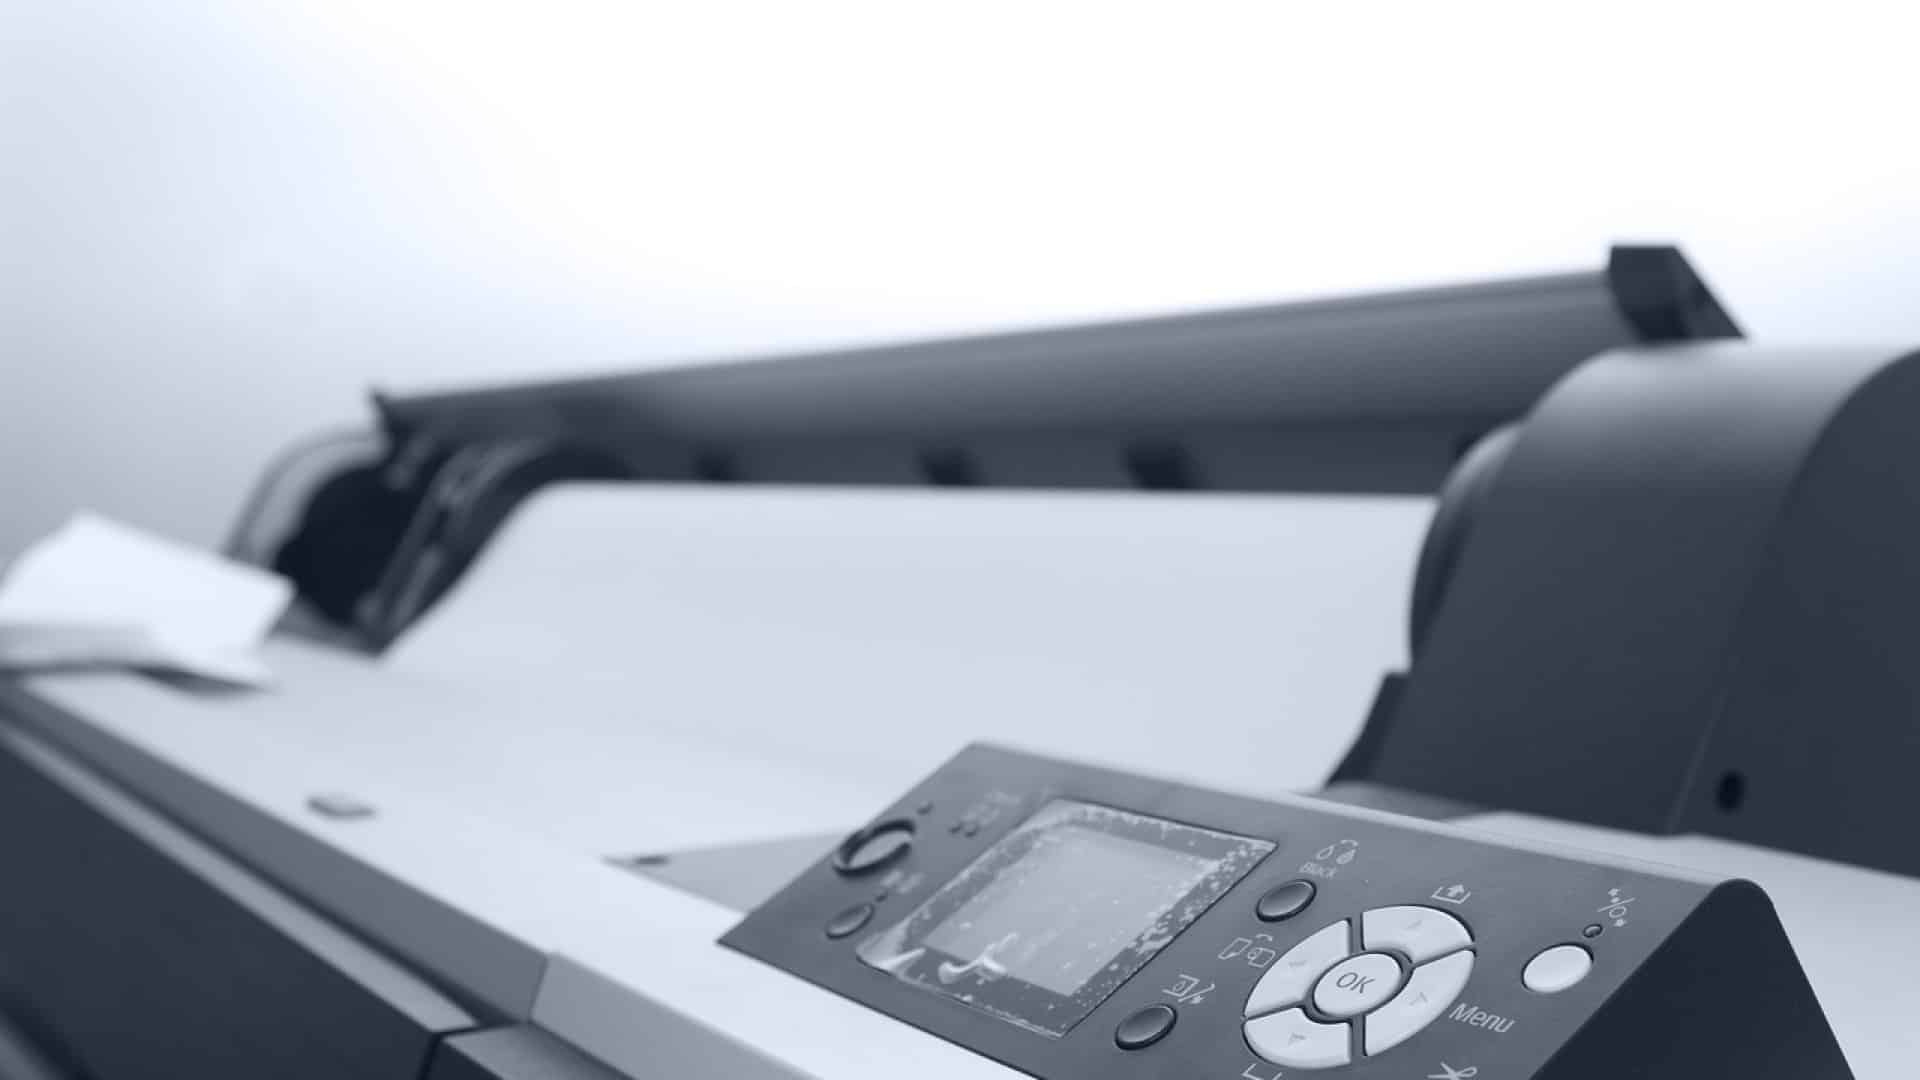 L'importance des imprimantes dans une entreprise